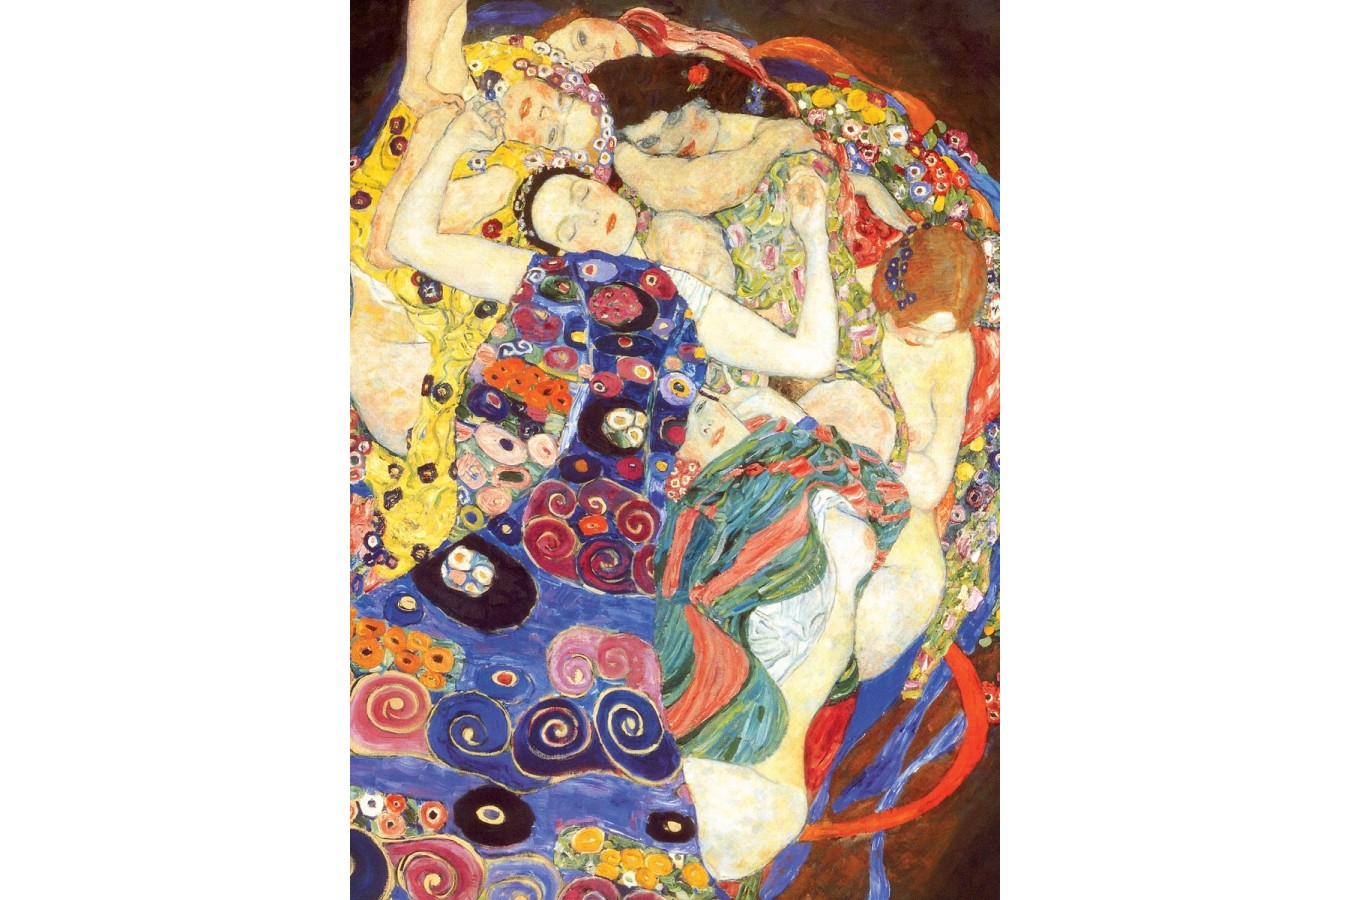 Puzzle Eurographics - Gustav Klimt: Jungfrauen, 1000 piese (6000-3693)